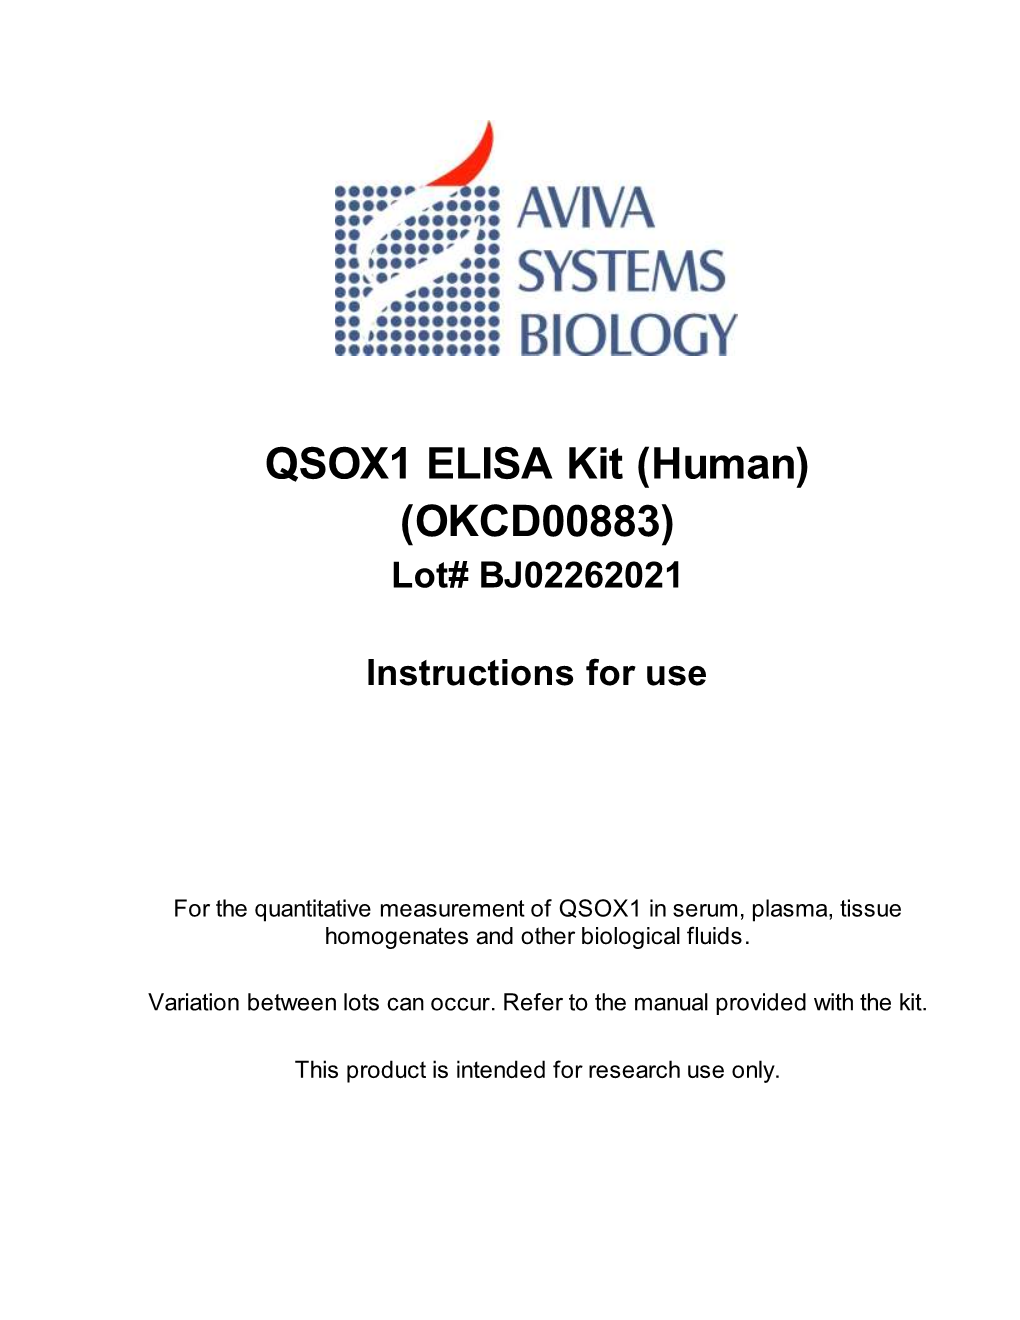 QSOX1 ELISA Kit (Human) (OKCD00883) Lot# BJ02262021